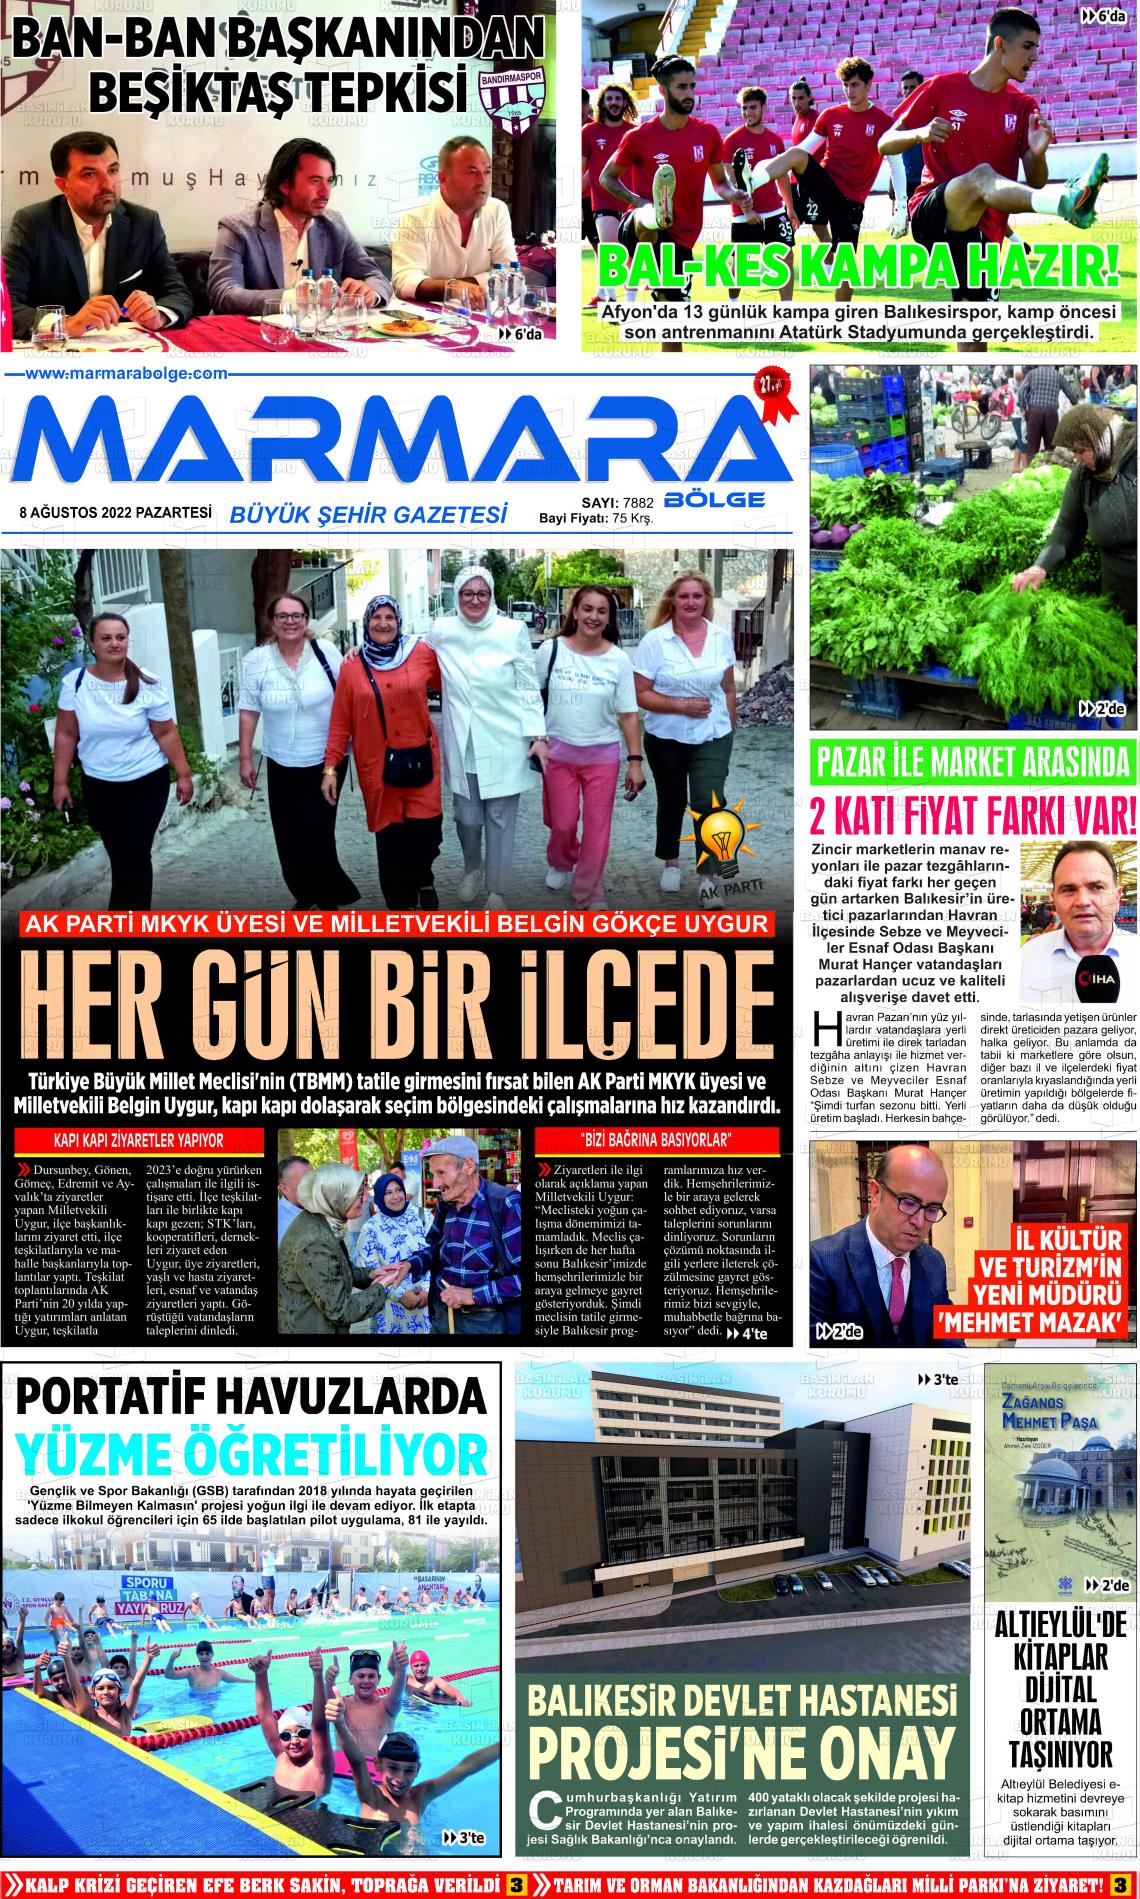 08 Ağustos 2022 Marmara Bölge Gazete Manşeti